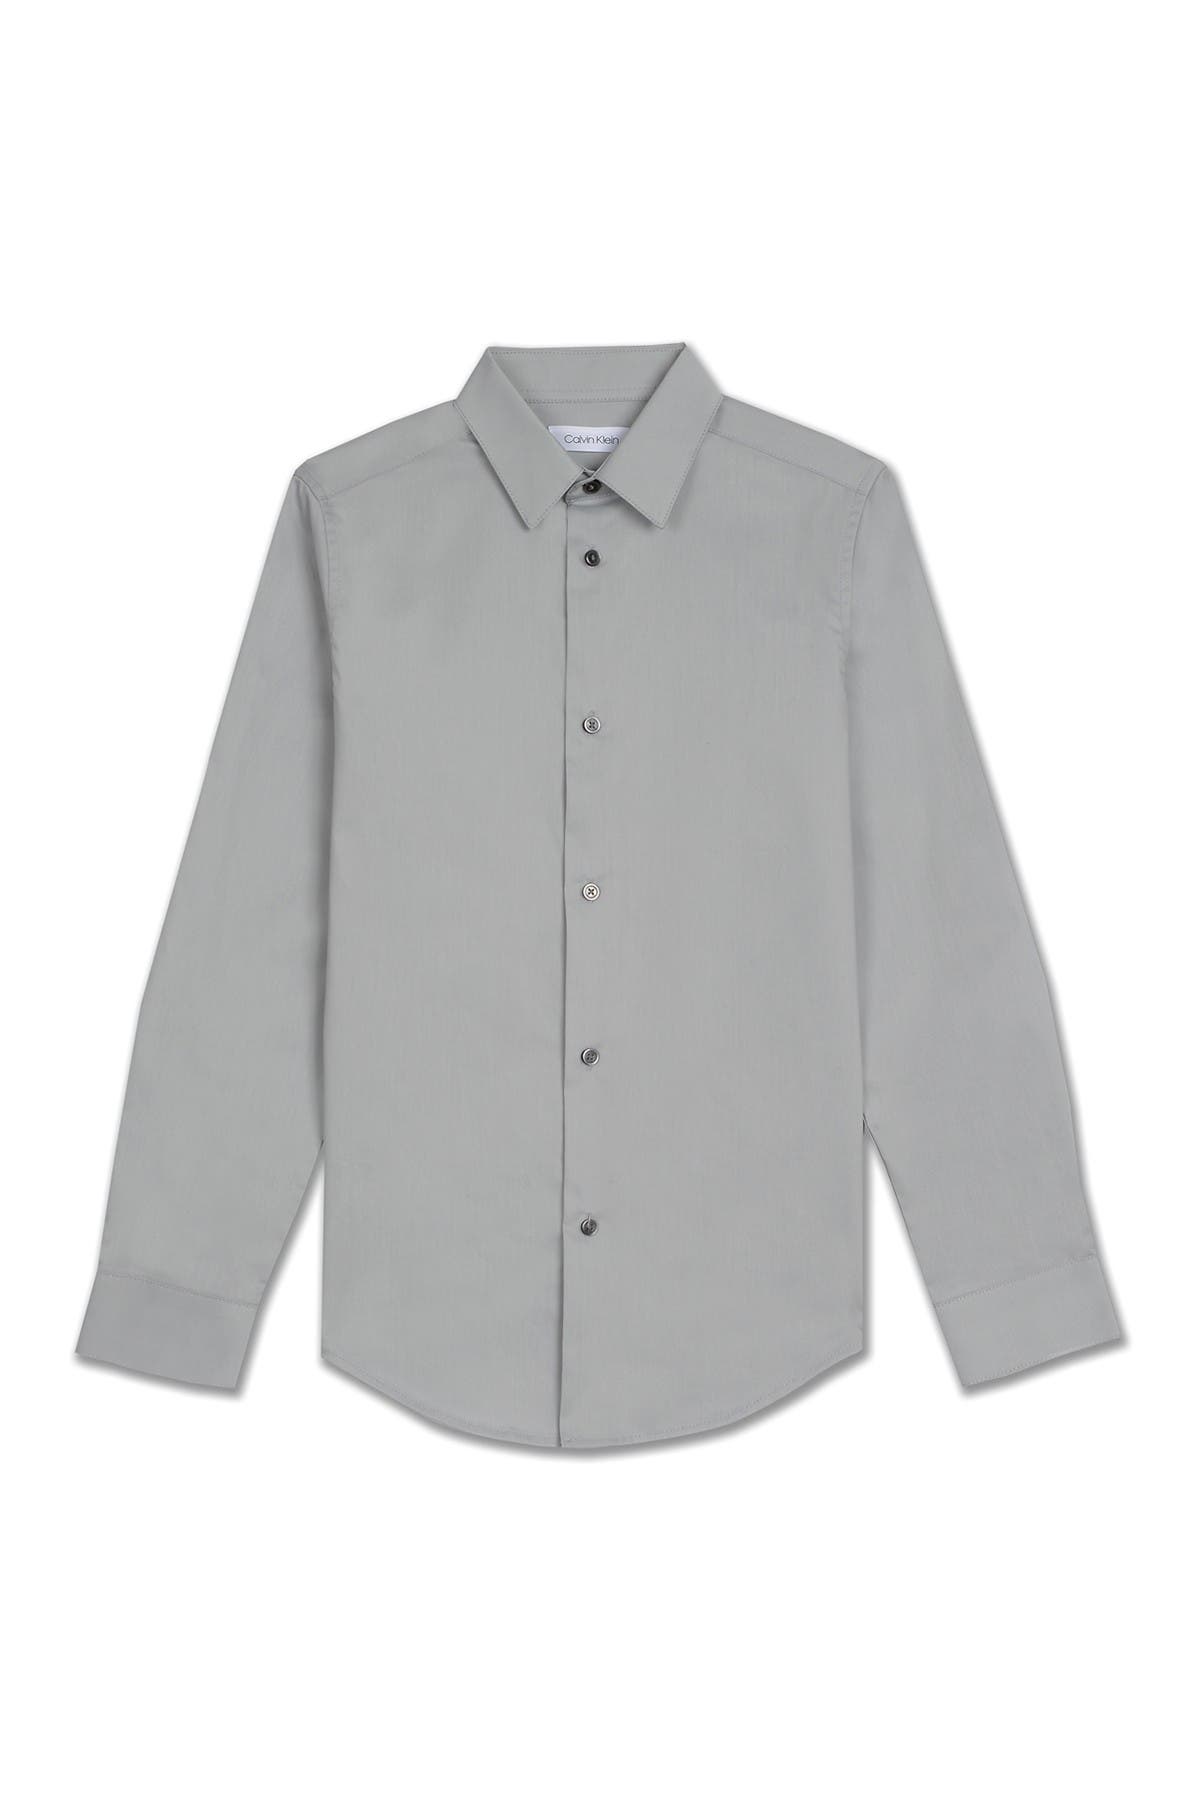 Calvin Klein Kids' Solid Long Sleeve Slim Fit Shirt In Medium Grey